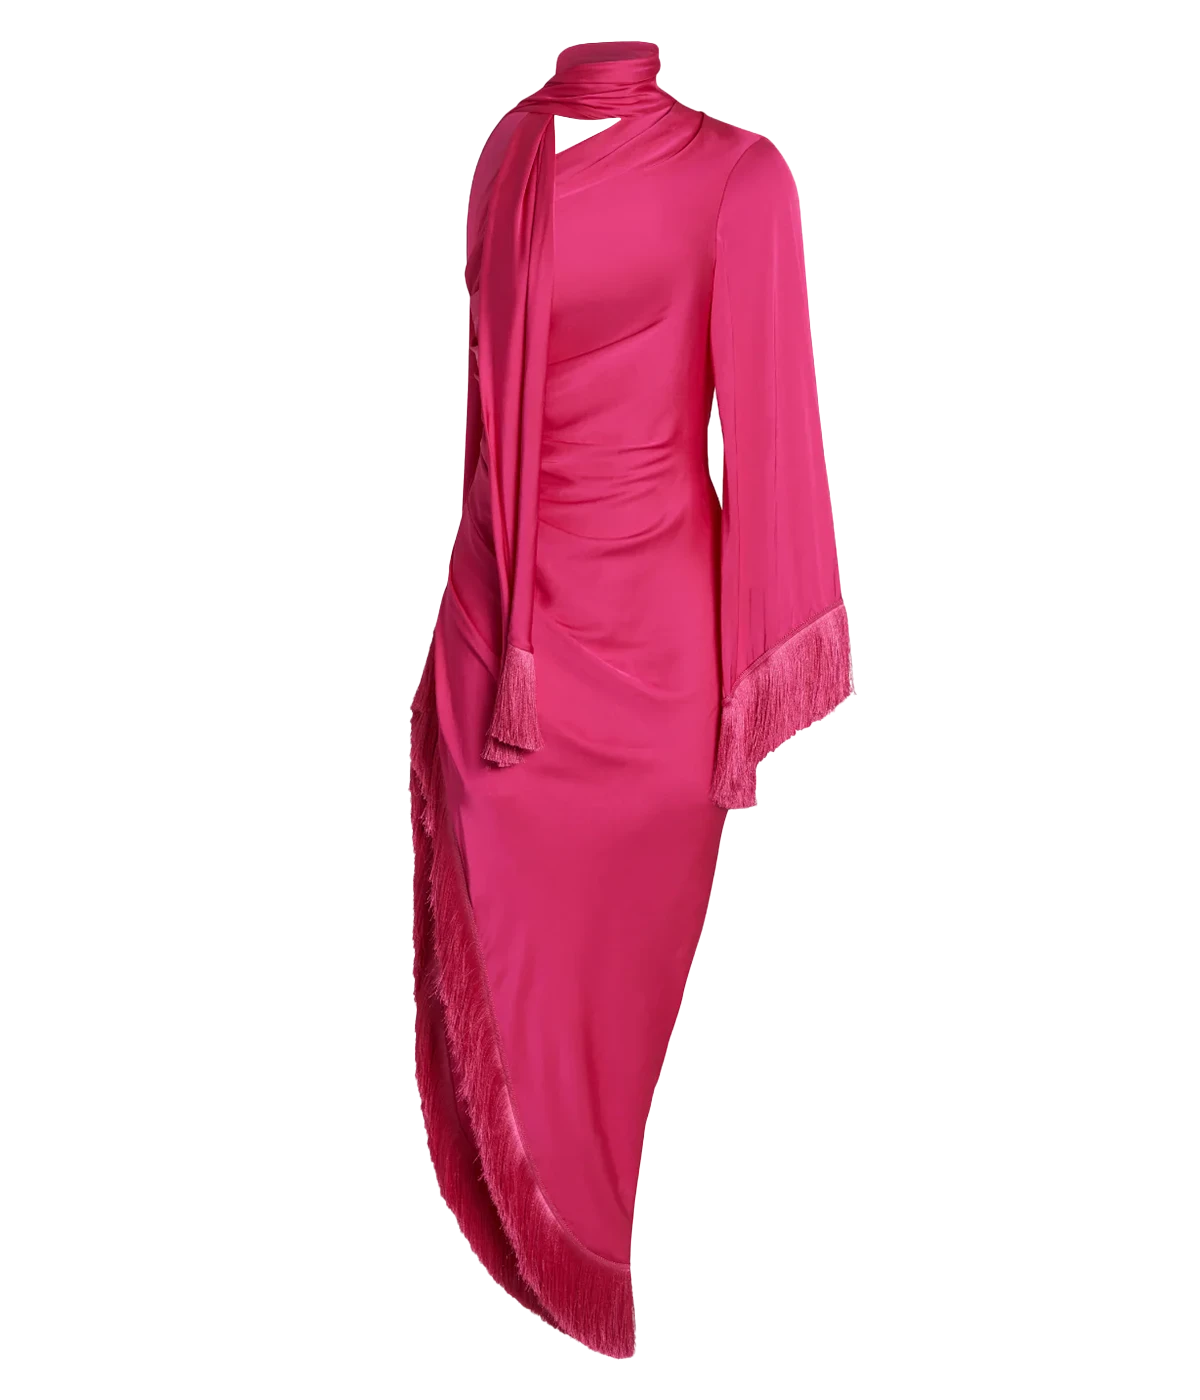 Fringe Trim Oscar Dress in Hot Pink